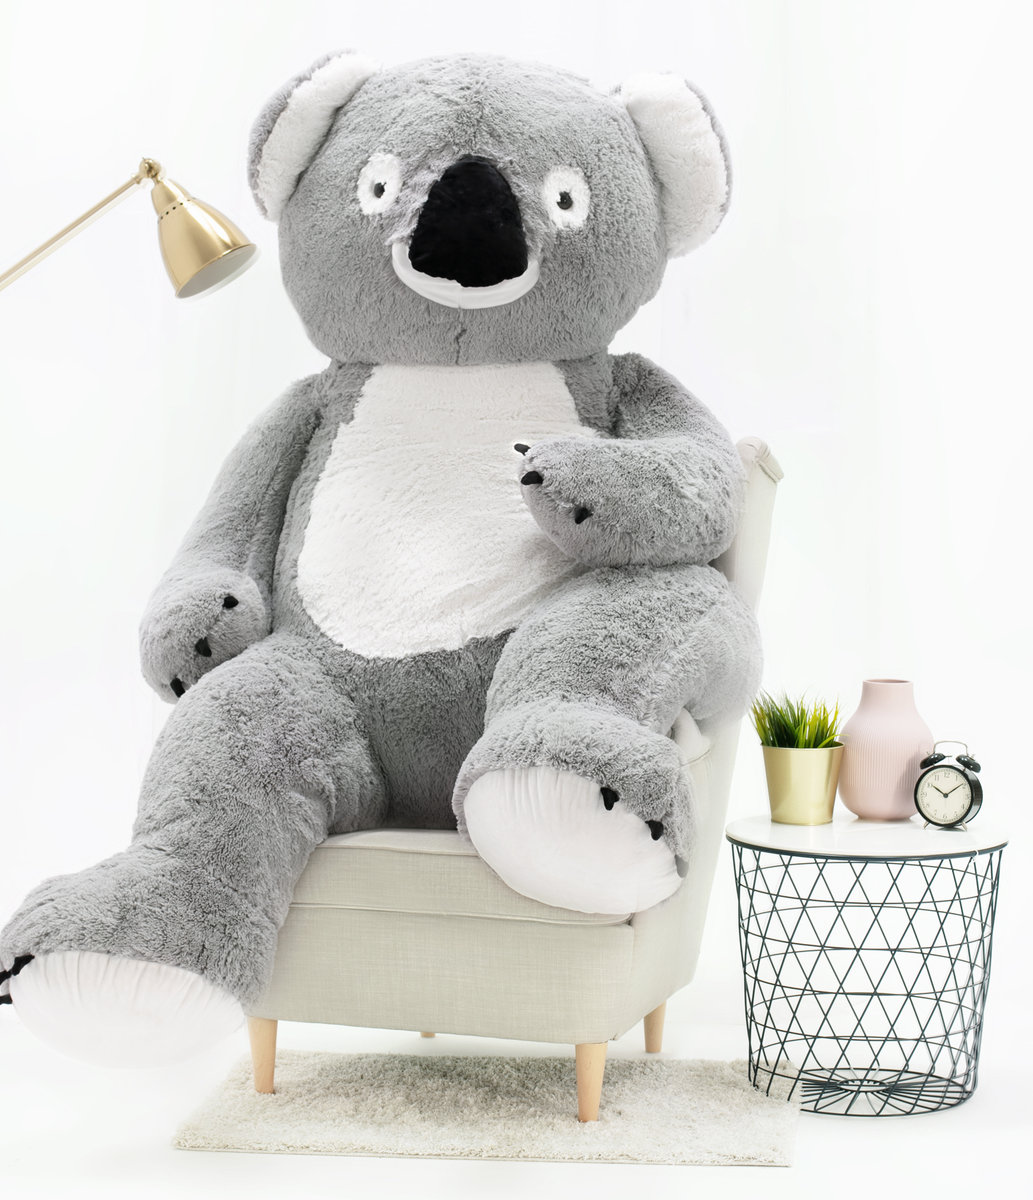 Miś Gustaw, duży miś Koala, 190 cm - Miś Gustaw | Sklep EMPIK.COM